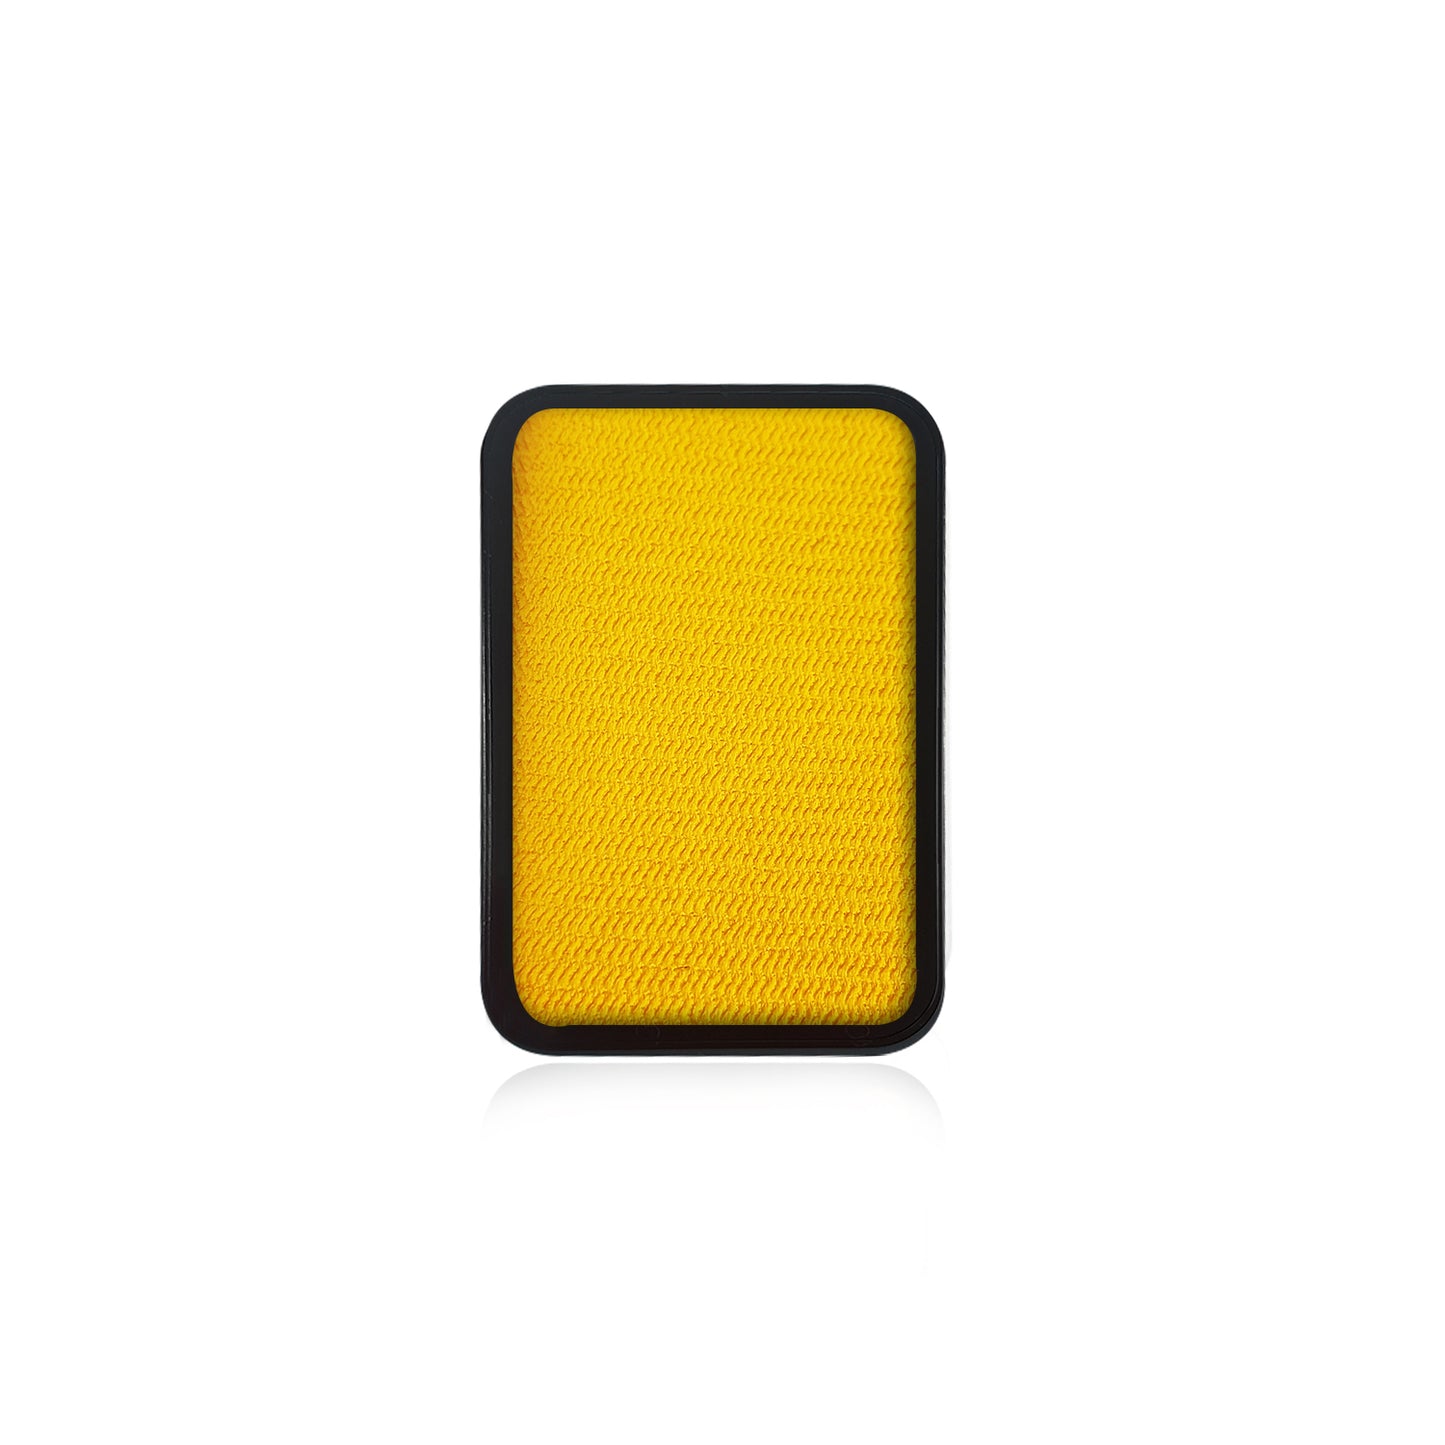 Kraze FX Face Paint Refill - Yellow (10 gm)